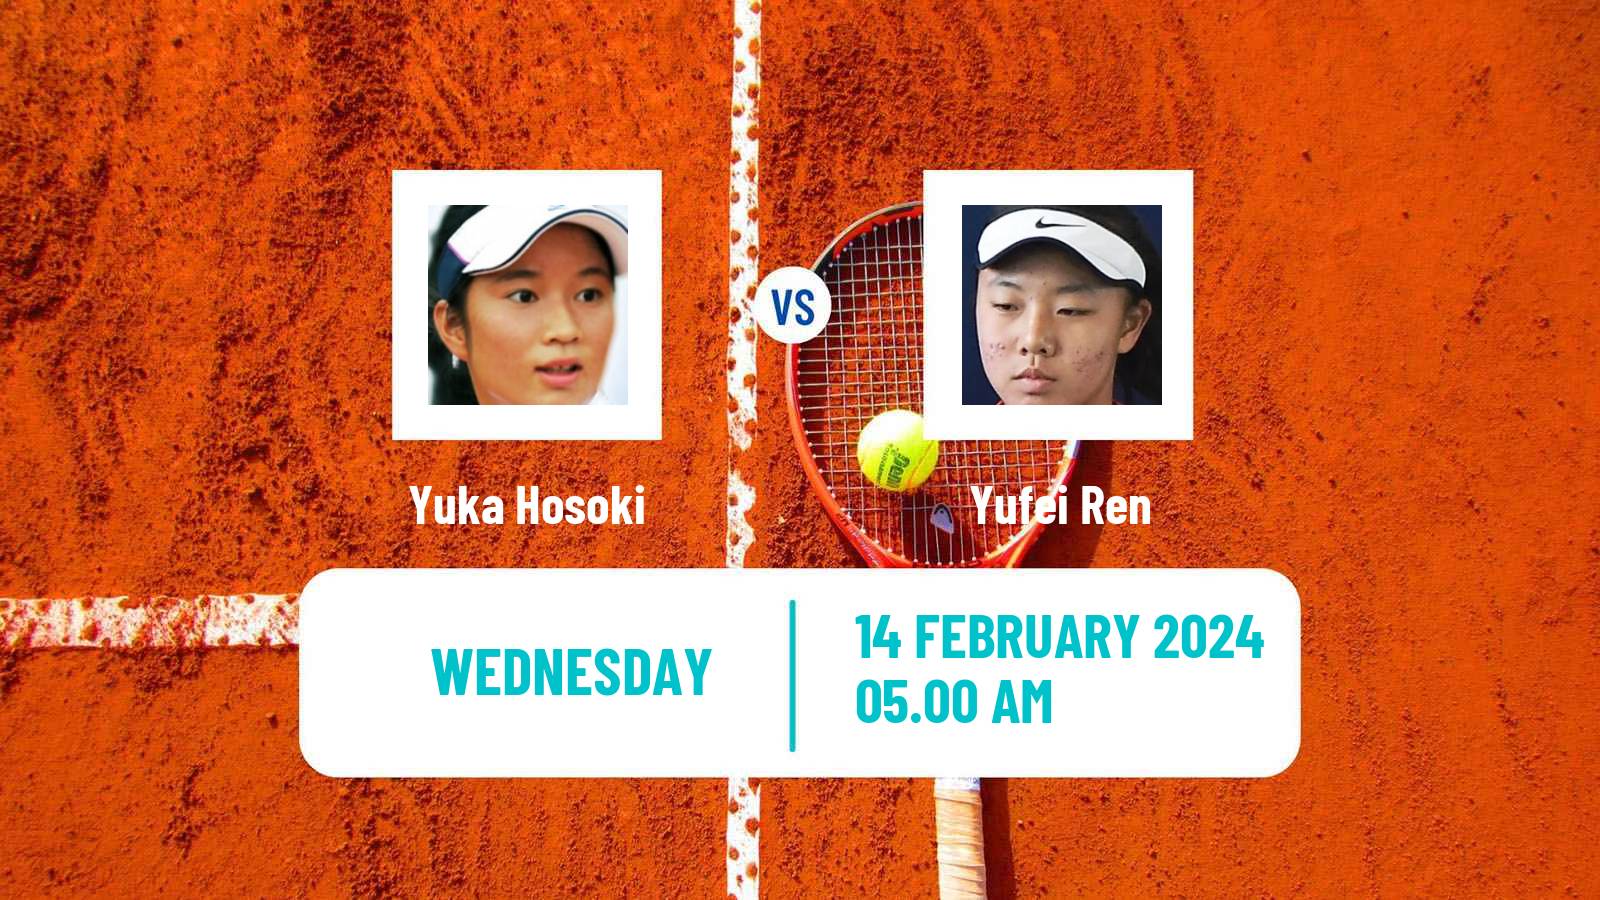 Tennis ITF W15 Monastir 5 Women Yuka Hosoki - Yufei Ren